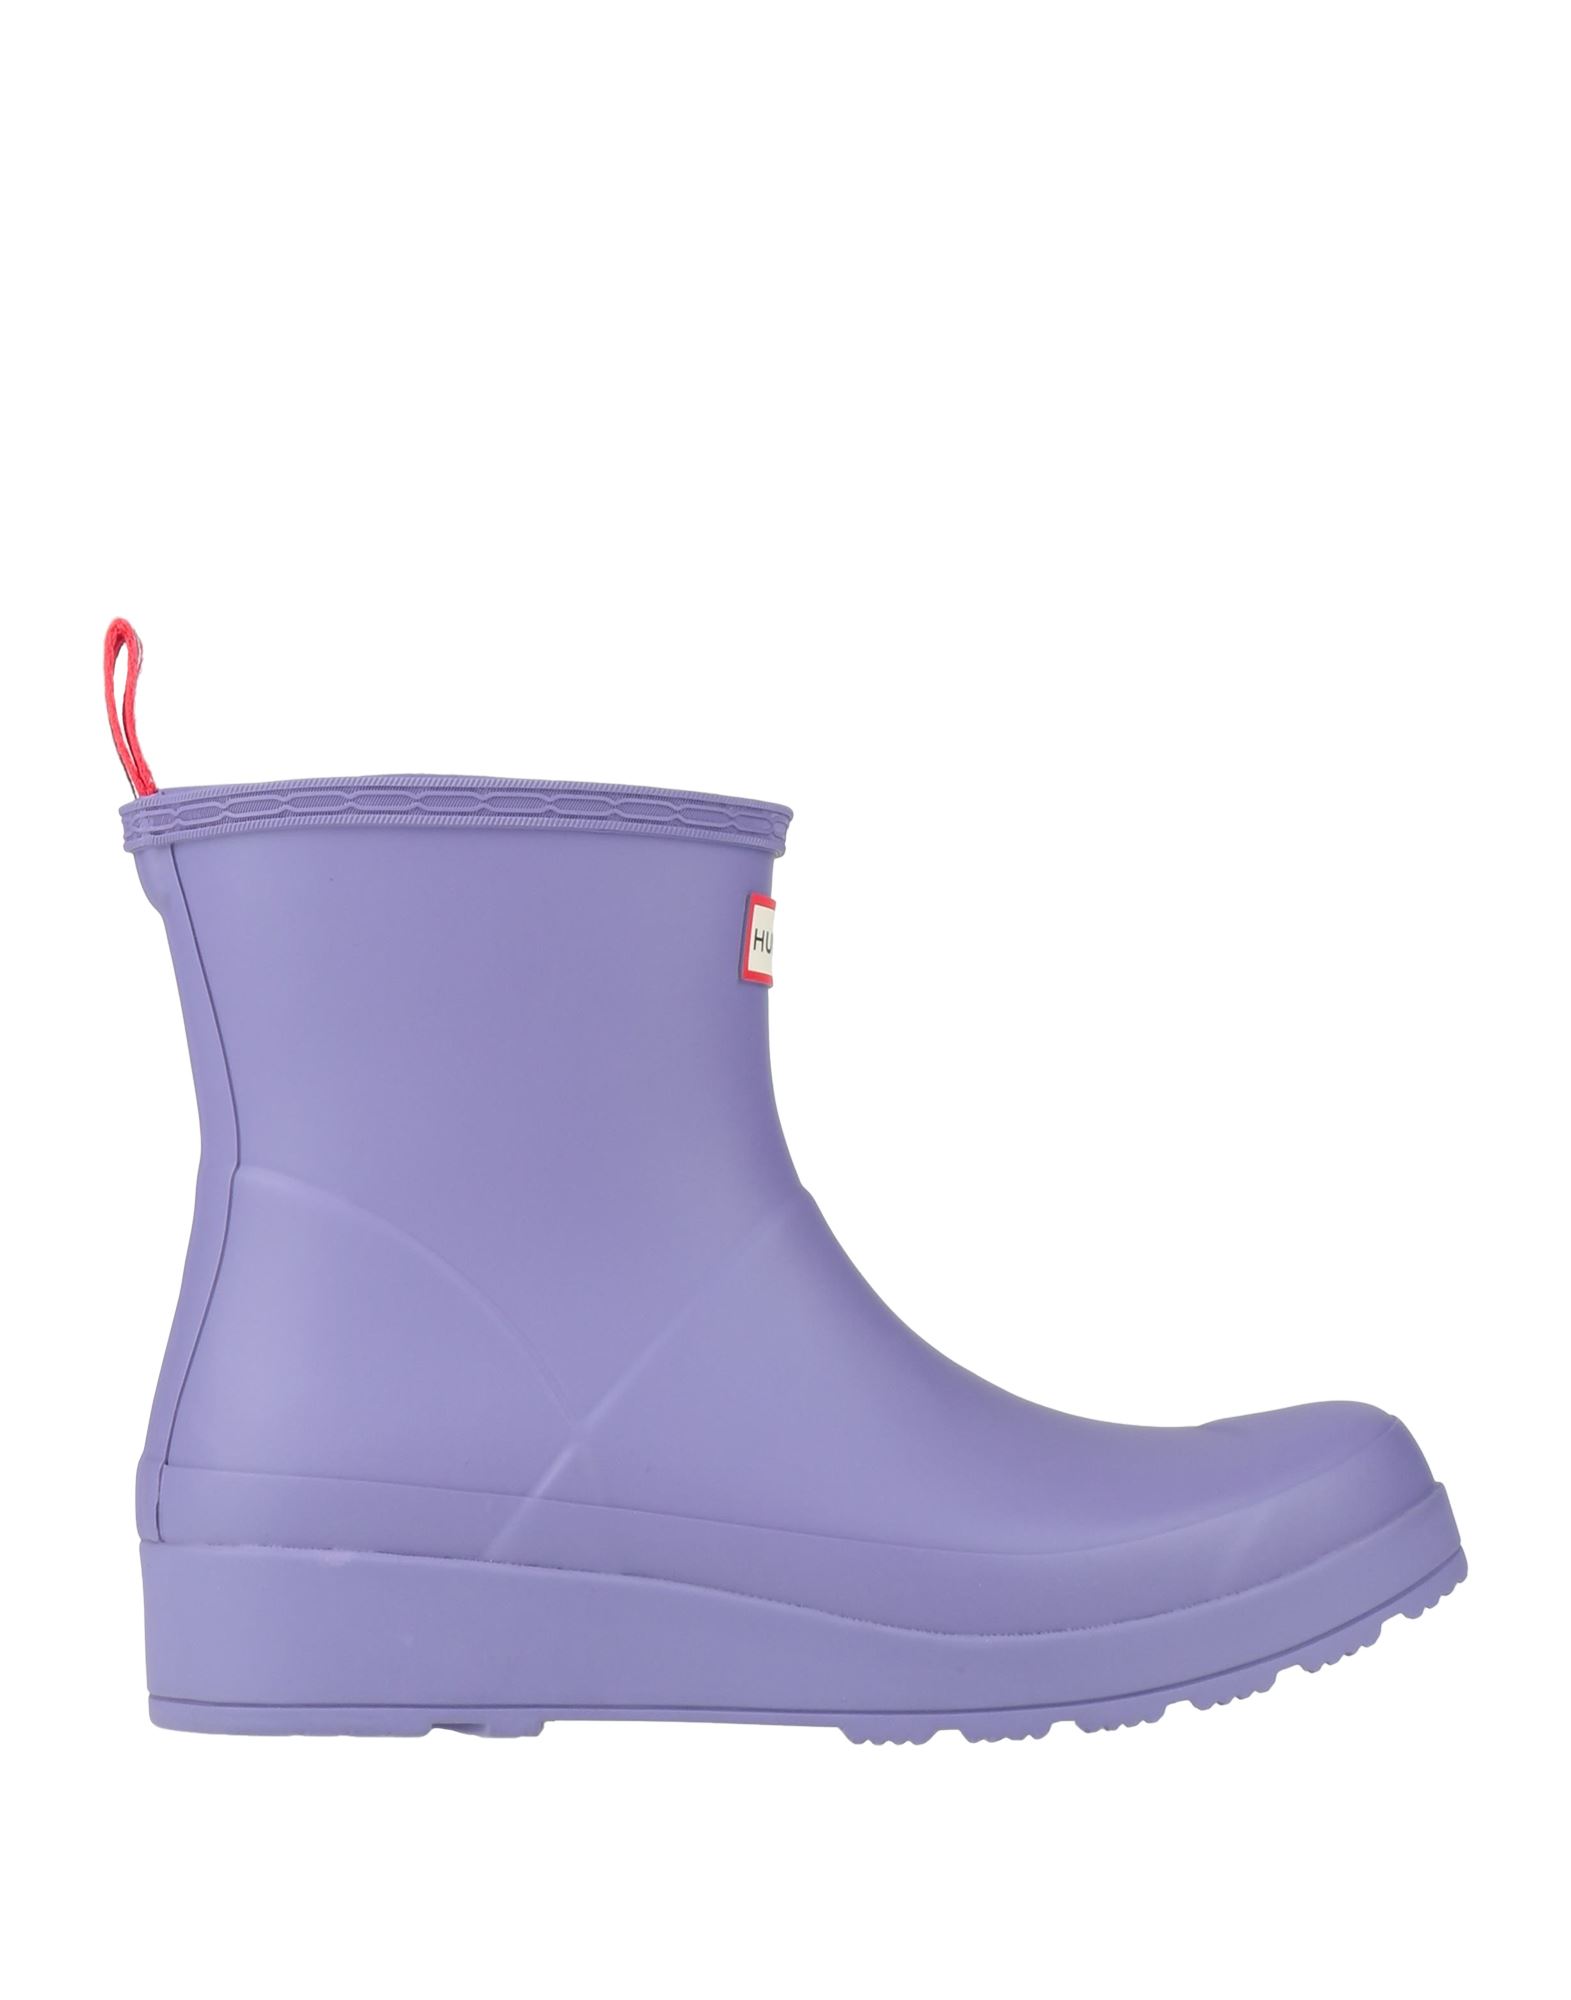 Shop Hunter Woman Ankle Boots Purple Size 7 Rubber